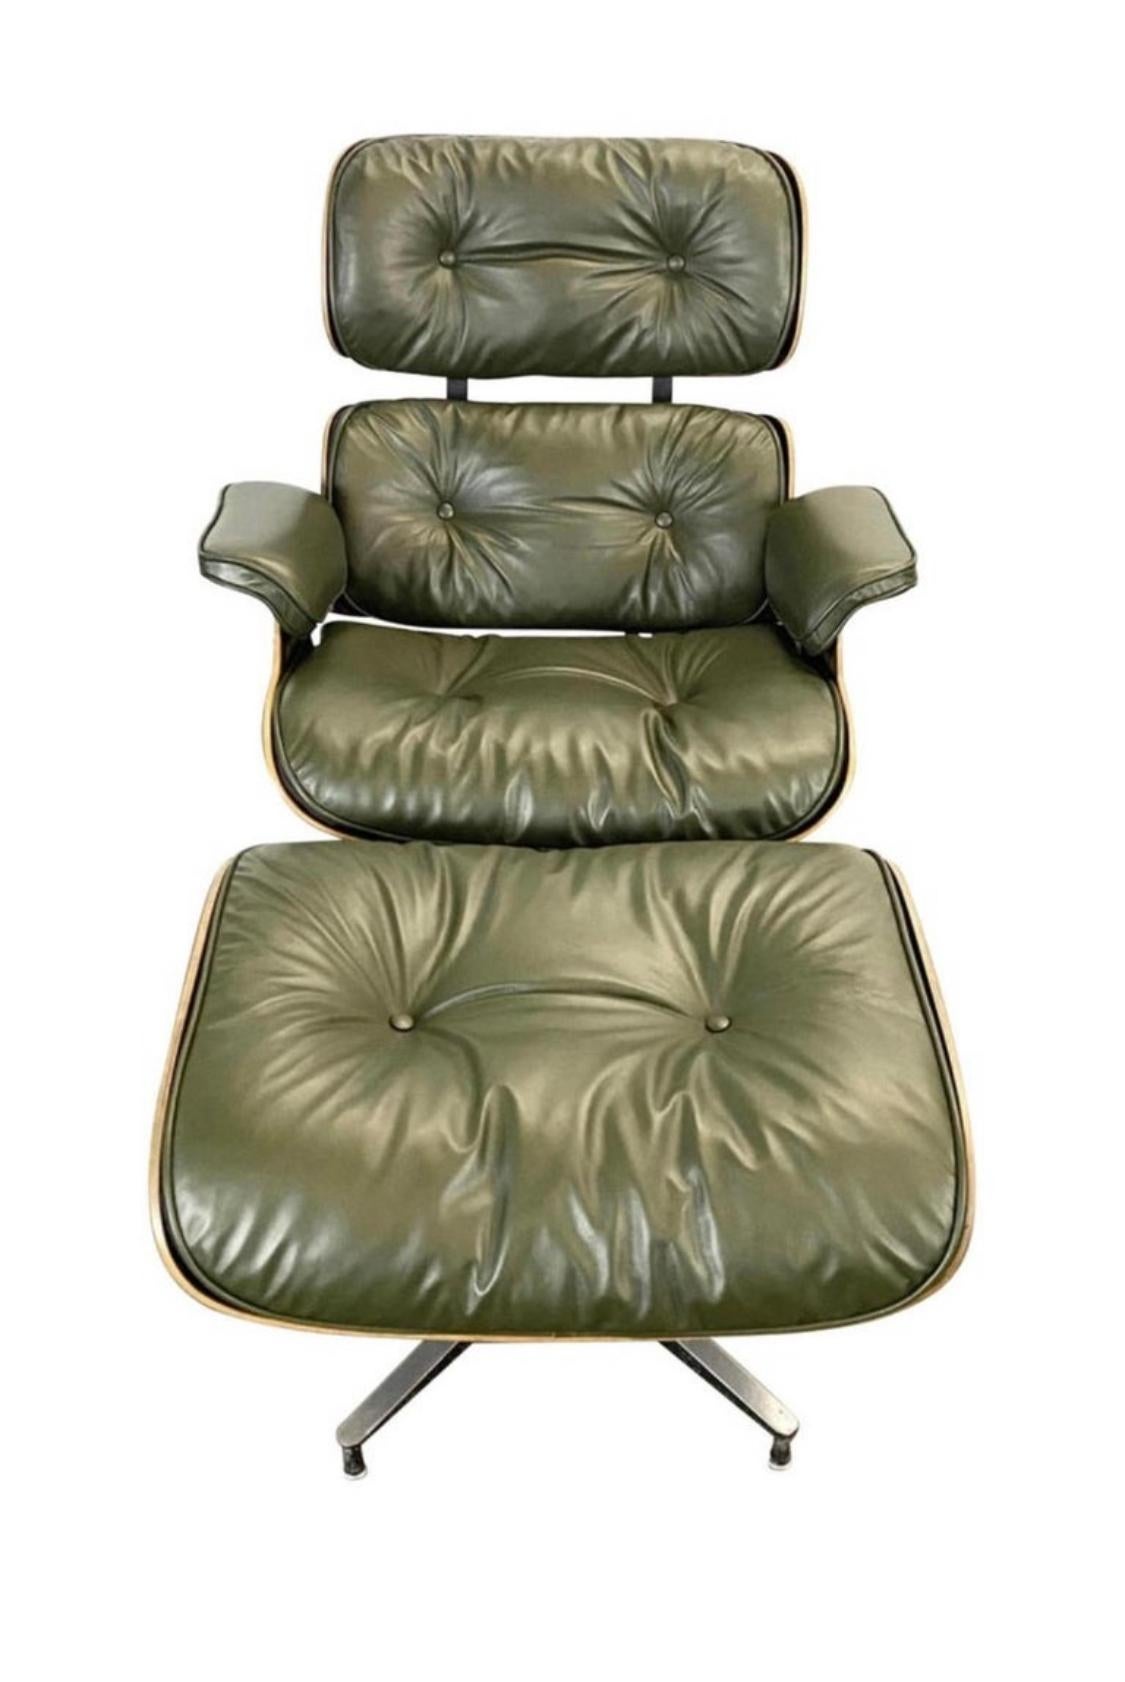 Ce n'est pas une couleur que l'on voit souvent ! Une chaise de salon Eames classique et un ottoman avec des composants en bois et en métal vintage, habillés de coussins en cuir flambant neufs dans la teinte Avocado. Délai de production de 3 à 4